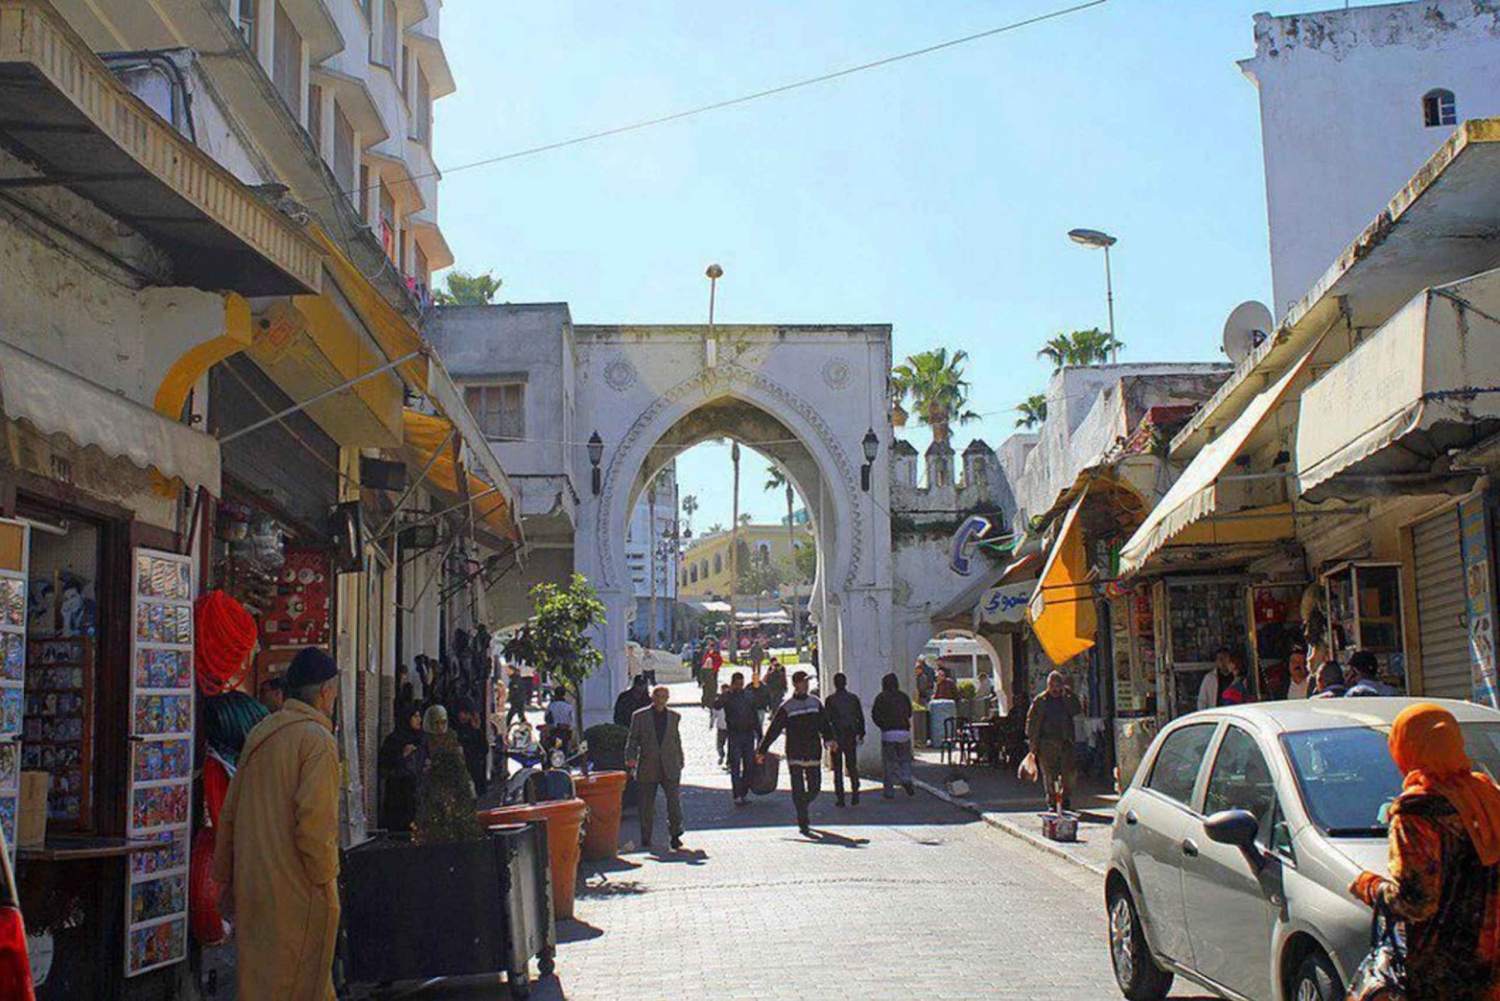 Malaga till Tanger: Exklusiv dagsutflykt med färjebiljett